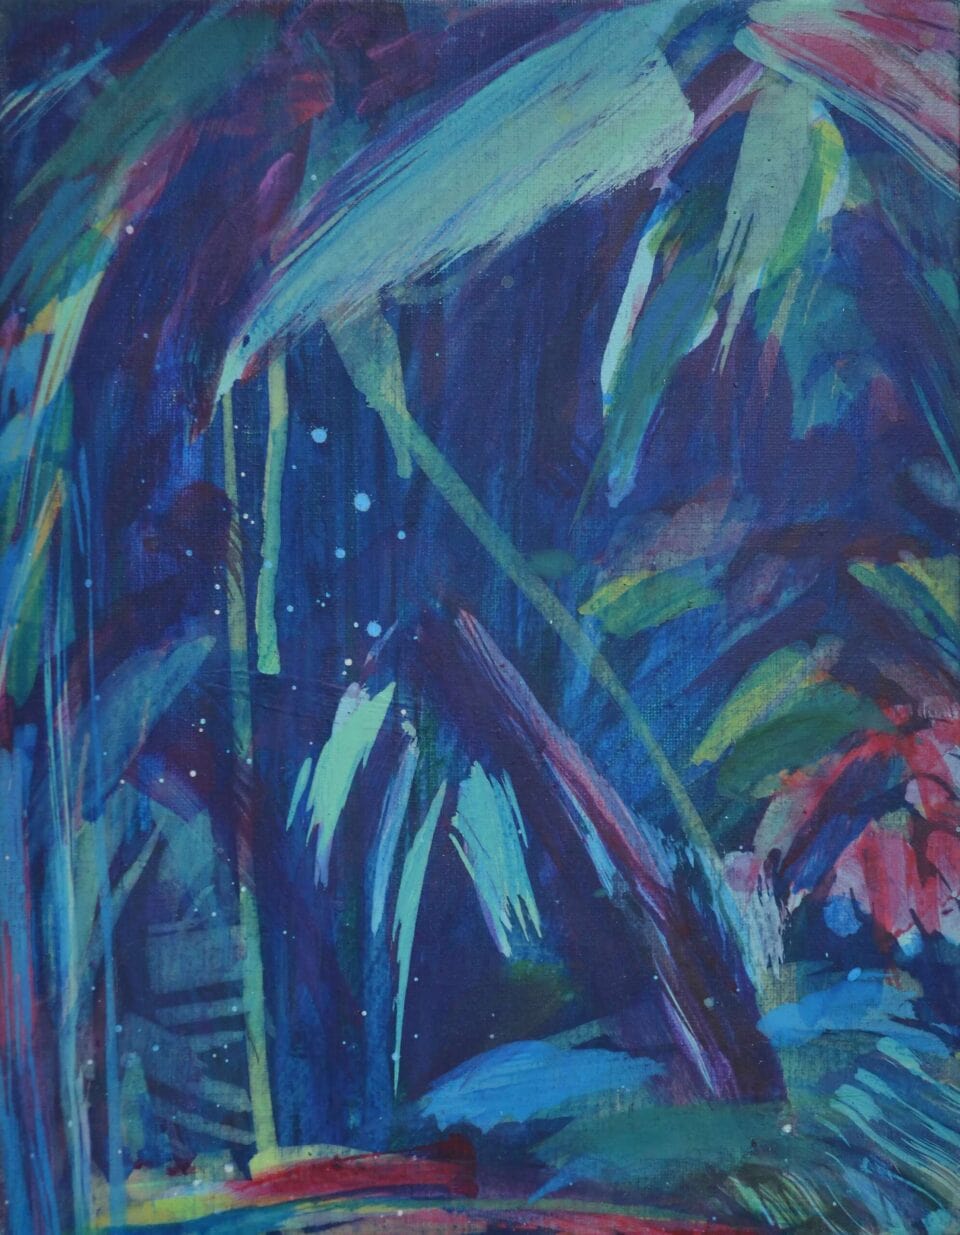 Nocturne #1, 2018, acrylique sur toile, 35x27 cm, collection particulière